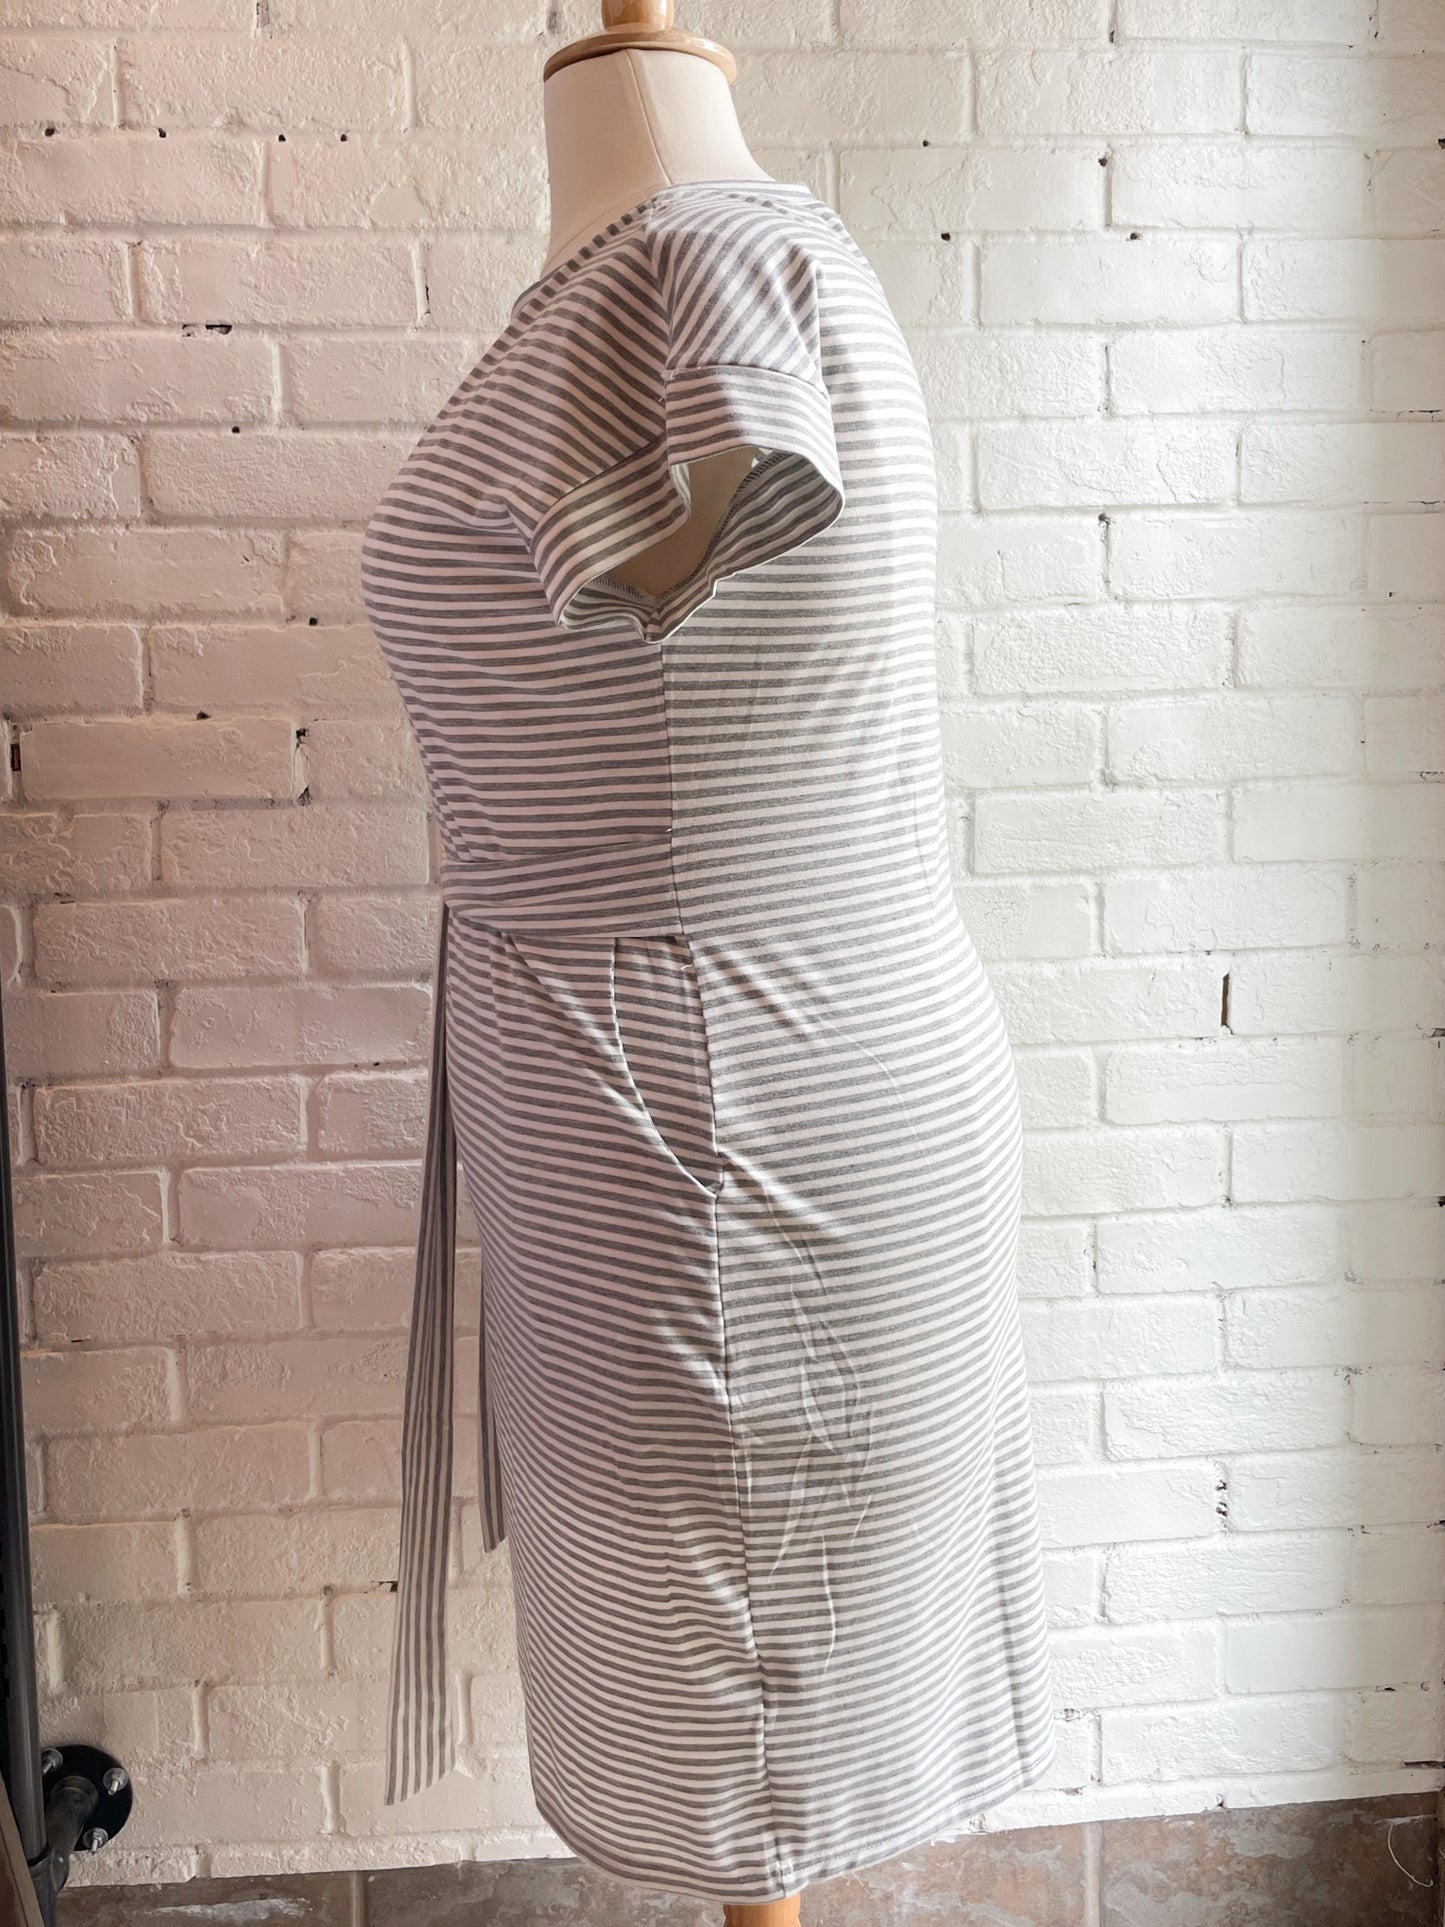 Meerokitty Grey and White Striped Waist Tie Dress NWT - XL